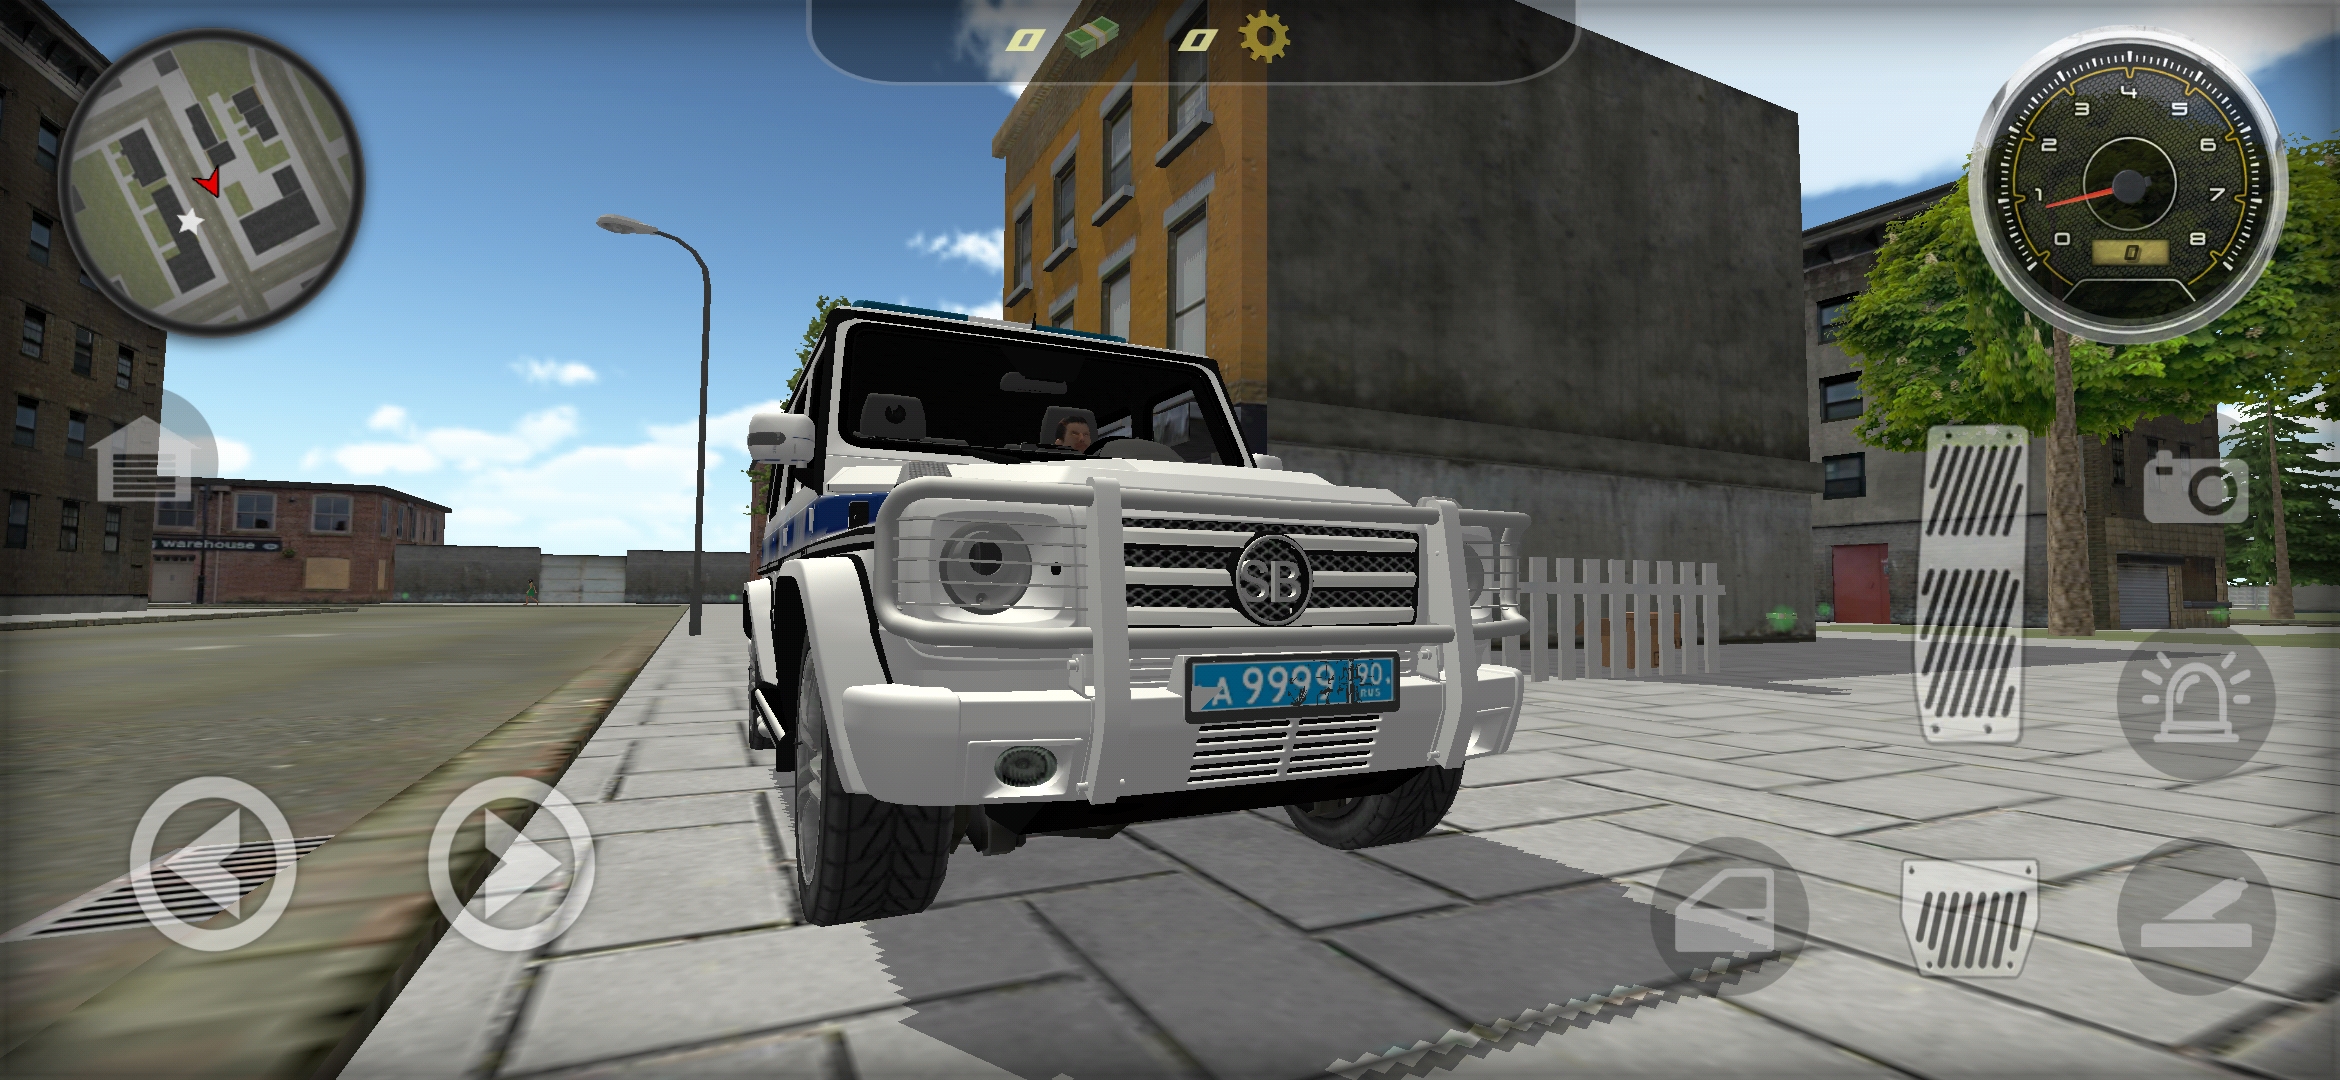 大G俄罗斯警车巡逻模拟免费版下载v1.11